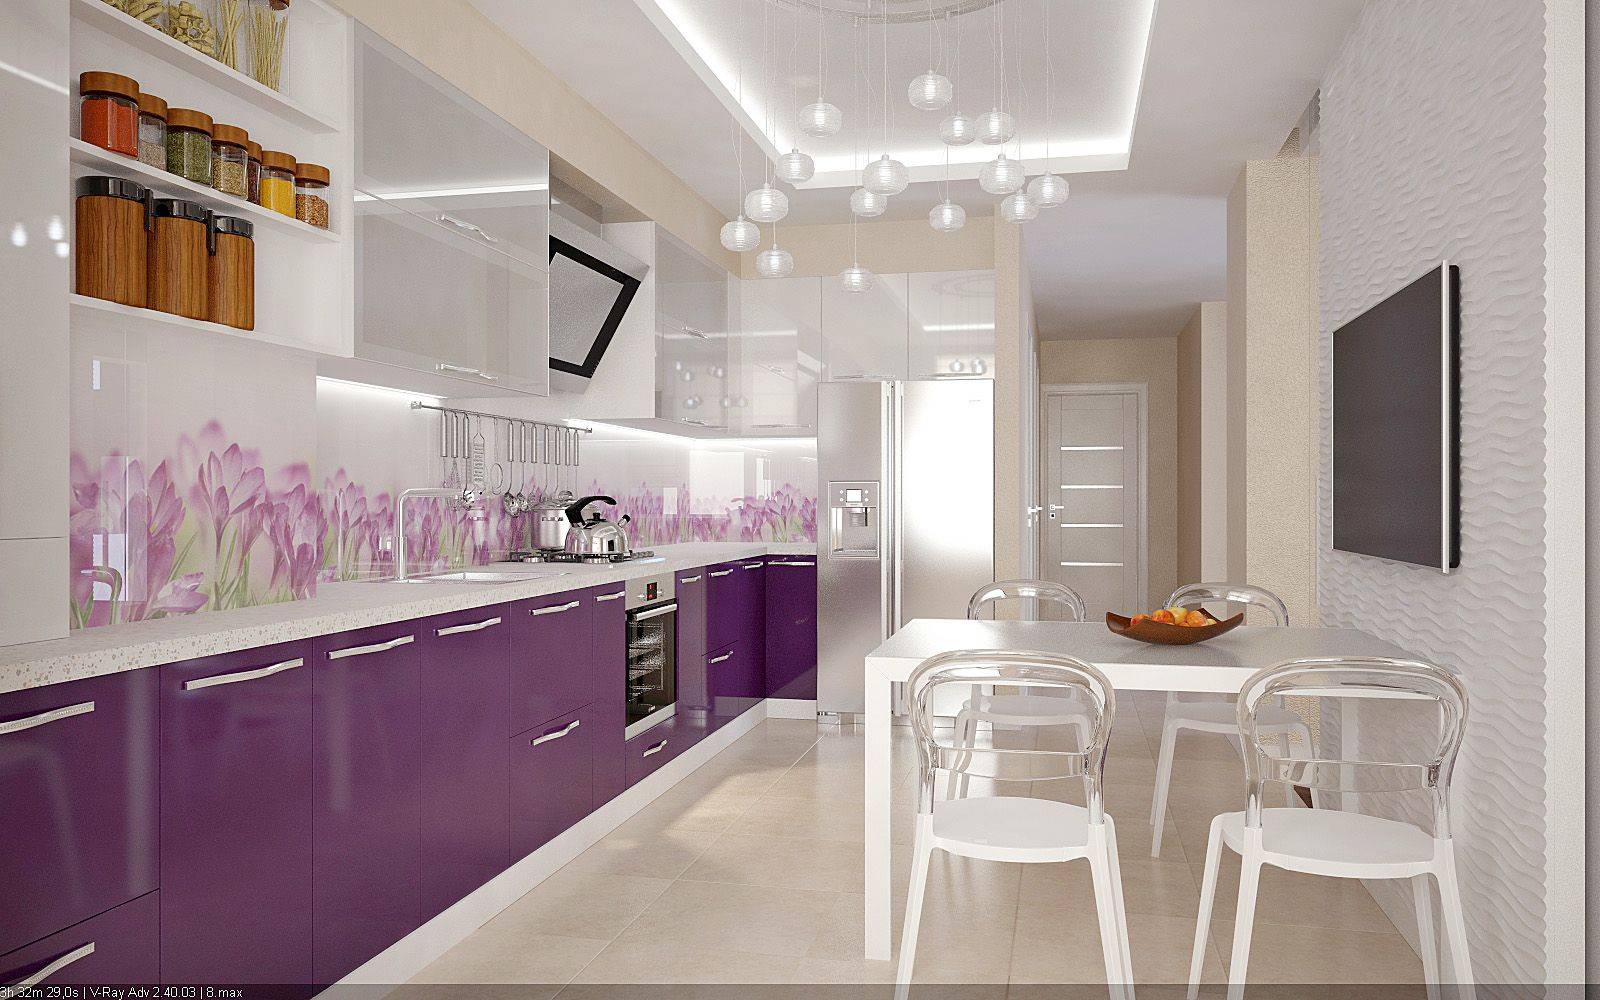 Фиолетовая кухня: сочетания цветов, выбор штор, отделки, обоев, мебели, освещения и декора – блог про кухни: все о кухне – kuhnyamy.ru